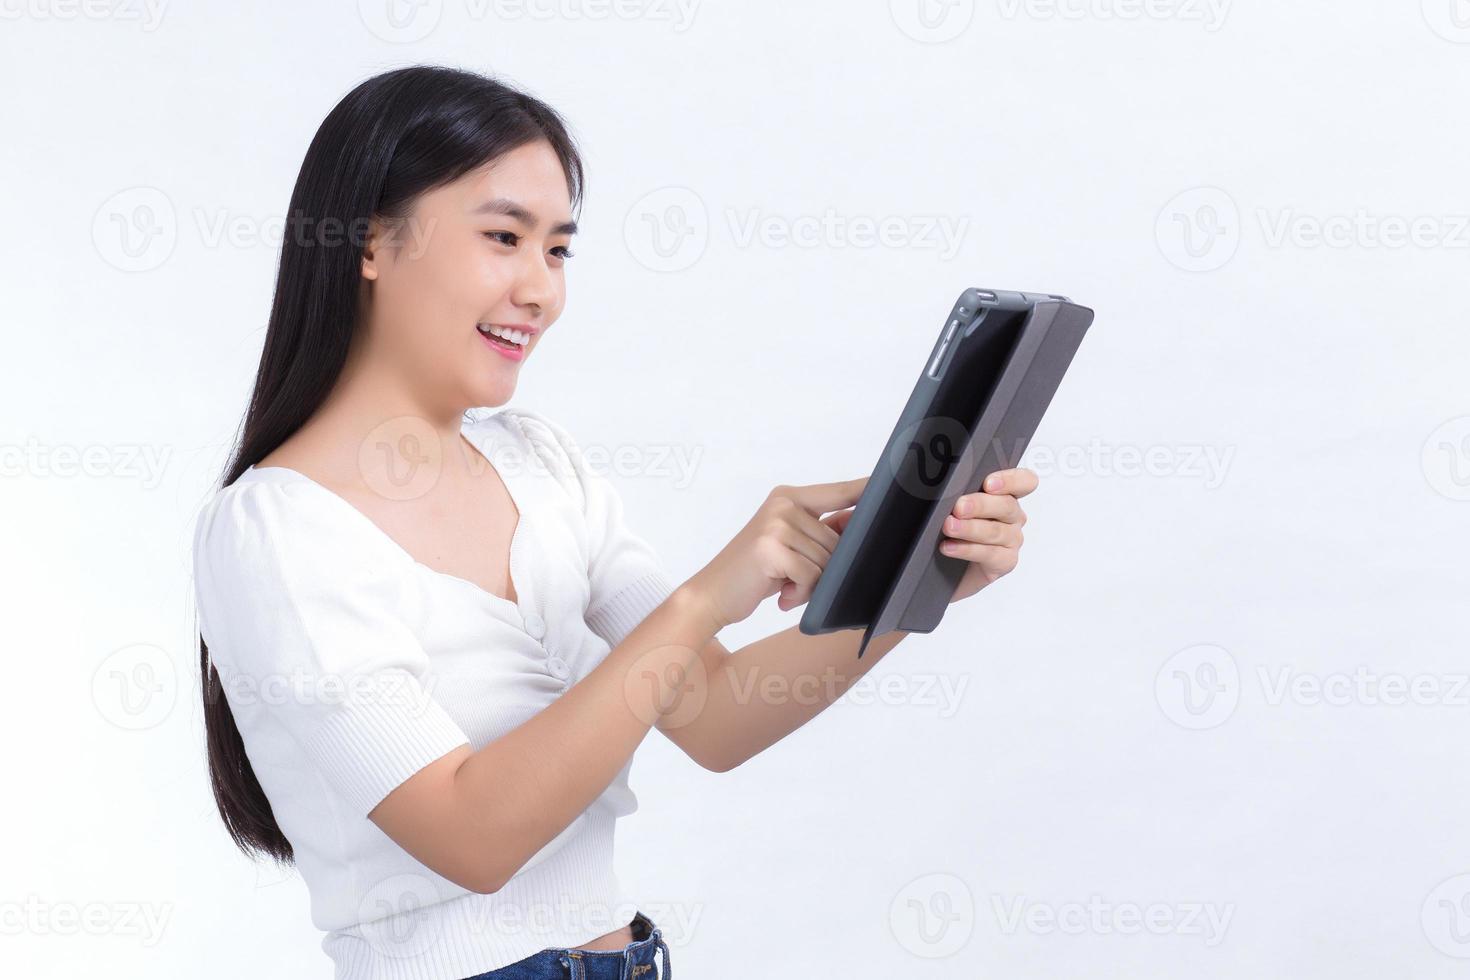 imagem de belos estudantes universitários asiáticos estão usando um telefone tablet com prazer em um fundo branco foto